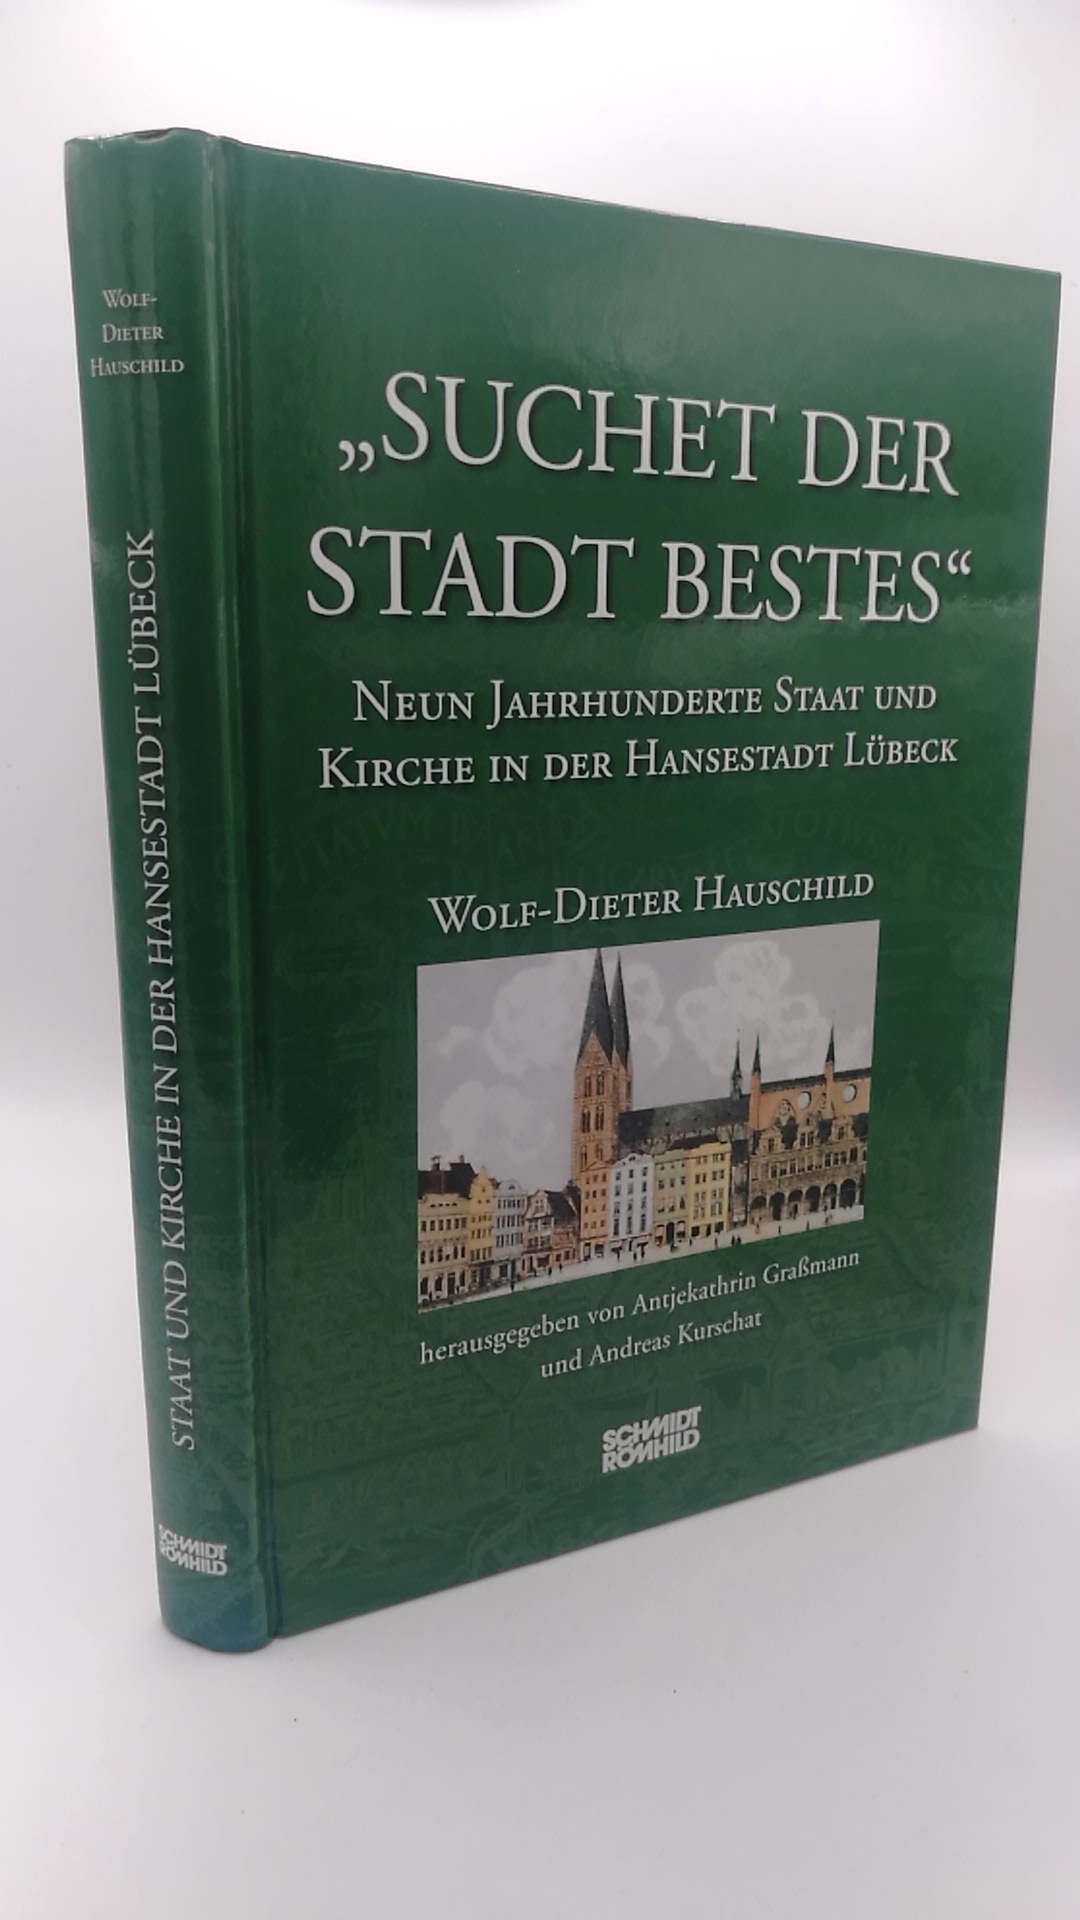 Suchet der Stadt Bestes Neun Jahrhunderte Staat und Kirche in der Hansestadt Lübeck - Wolf-Dieter Hauschild